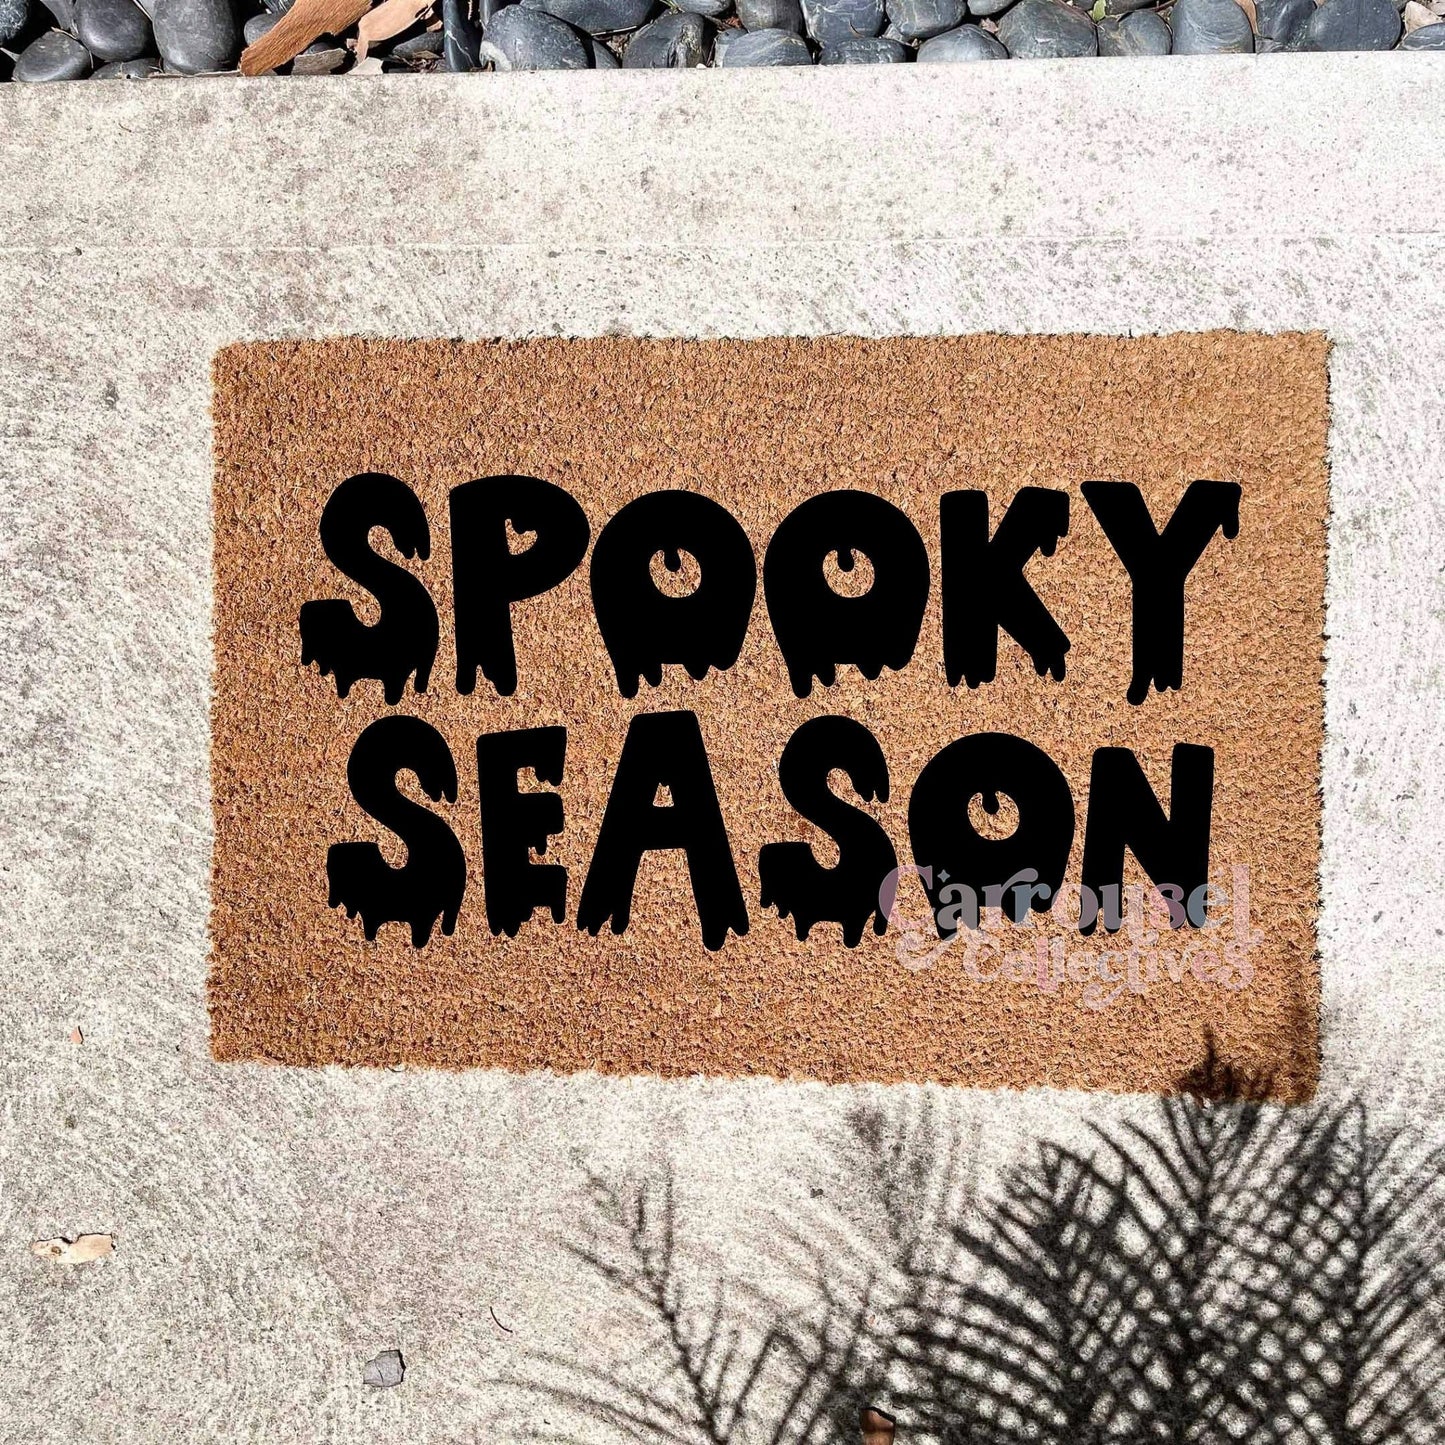 Spooky season doormat, Halloween Doormat, Spooky Doormat, Creepy Doormat